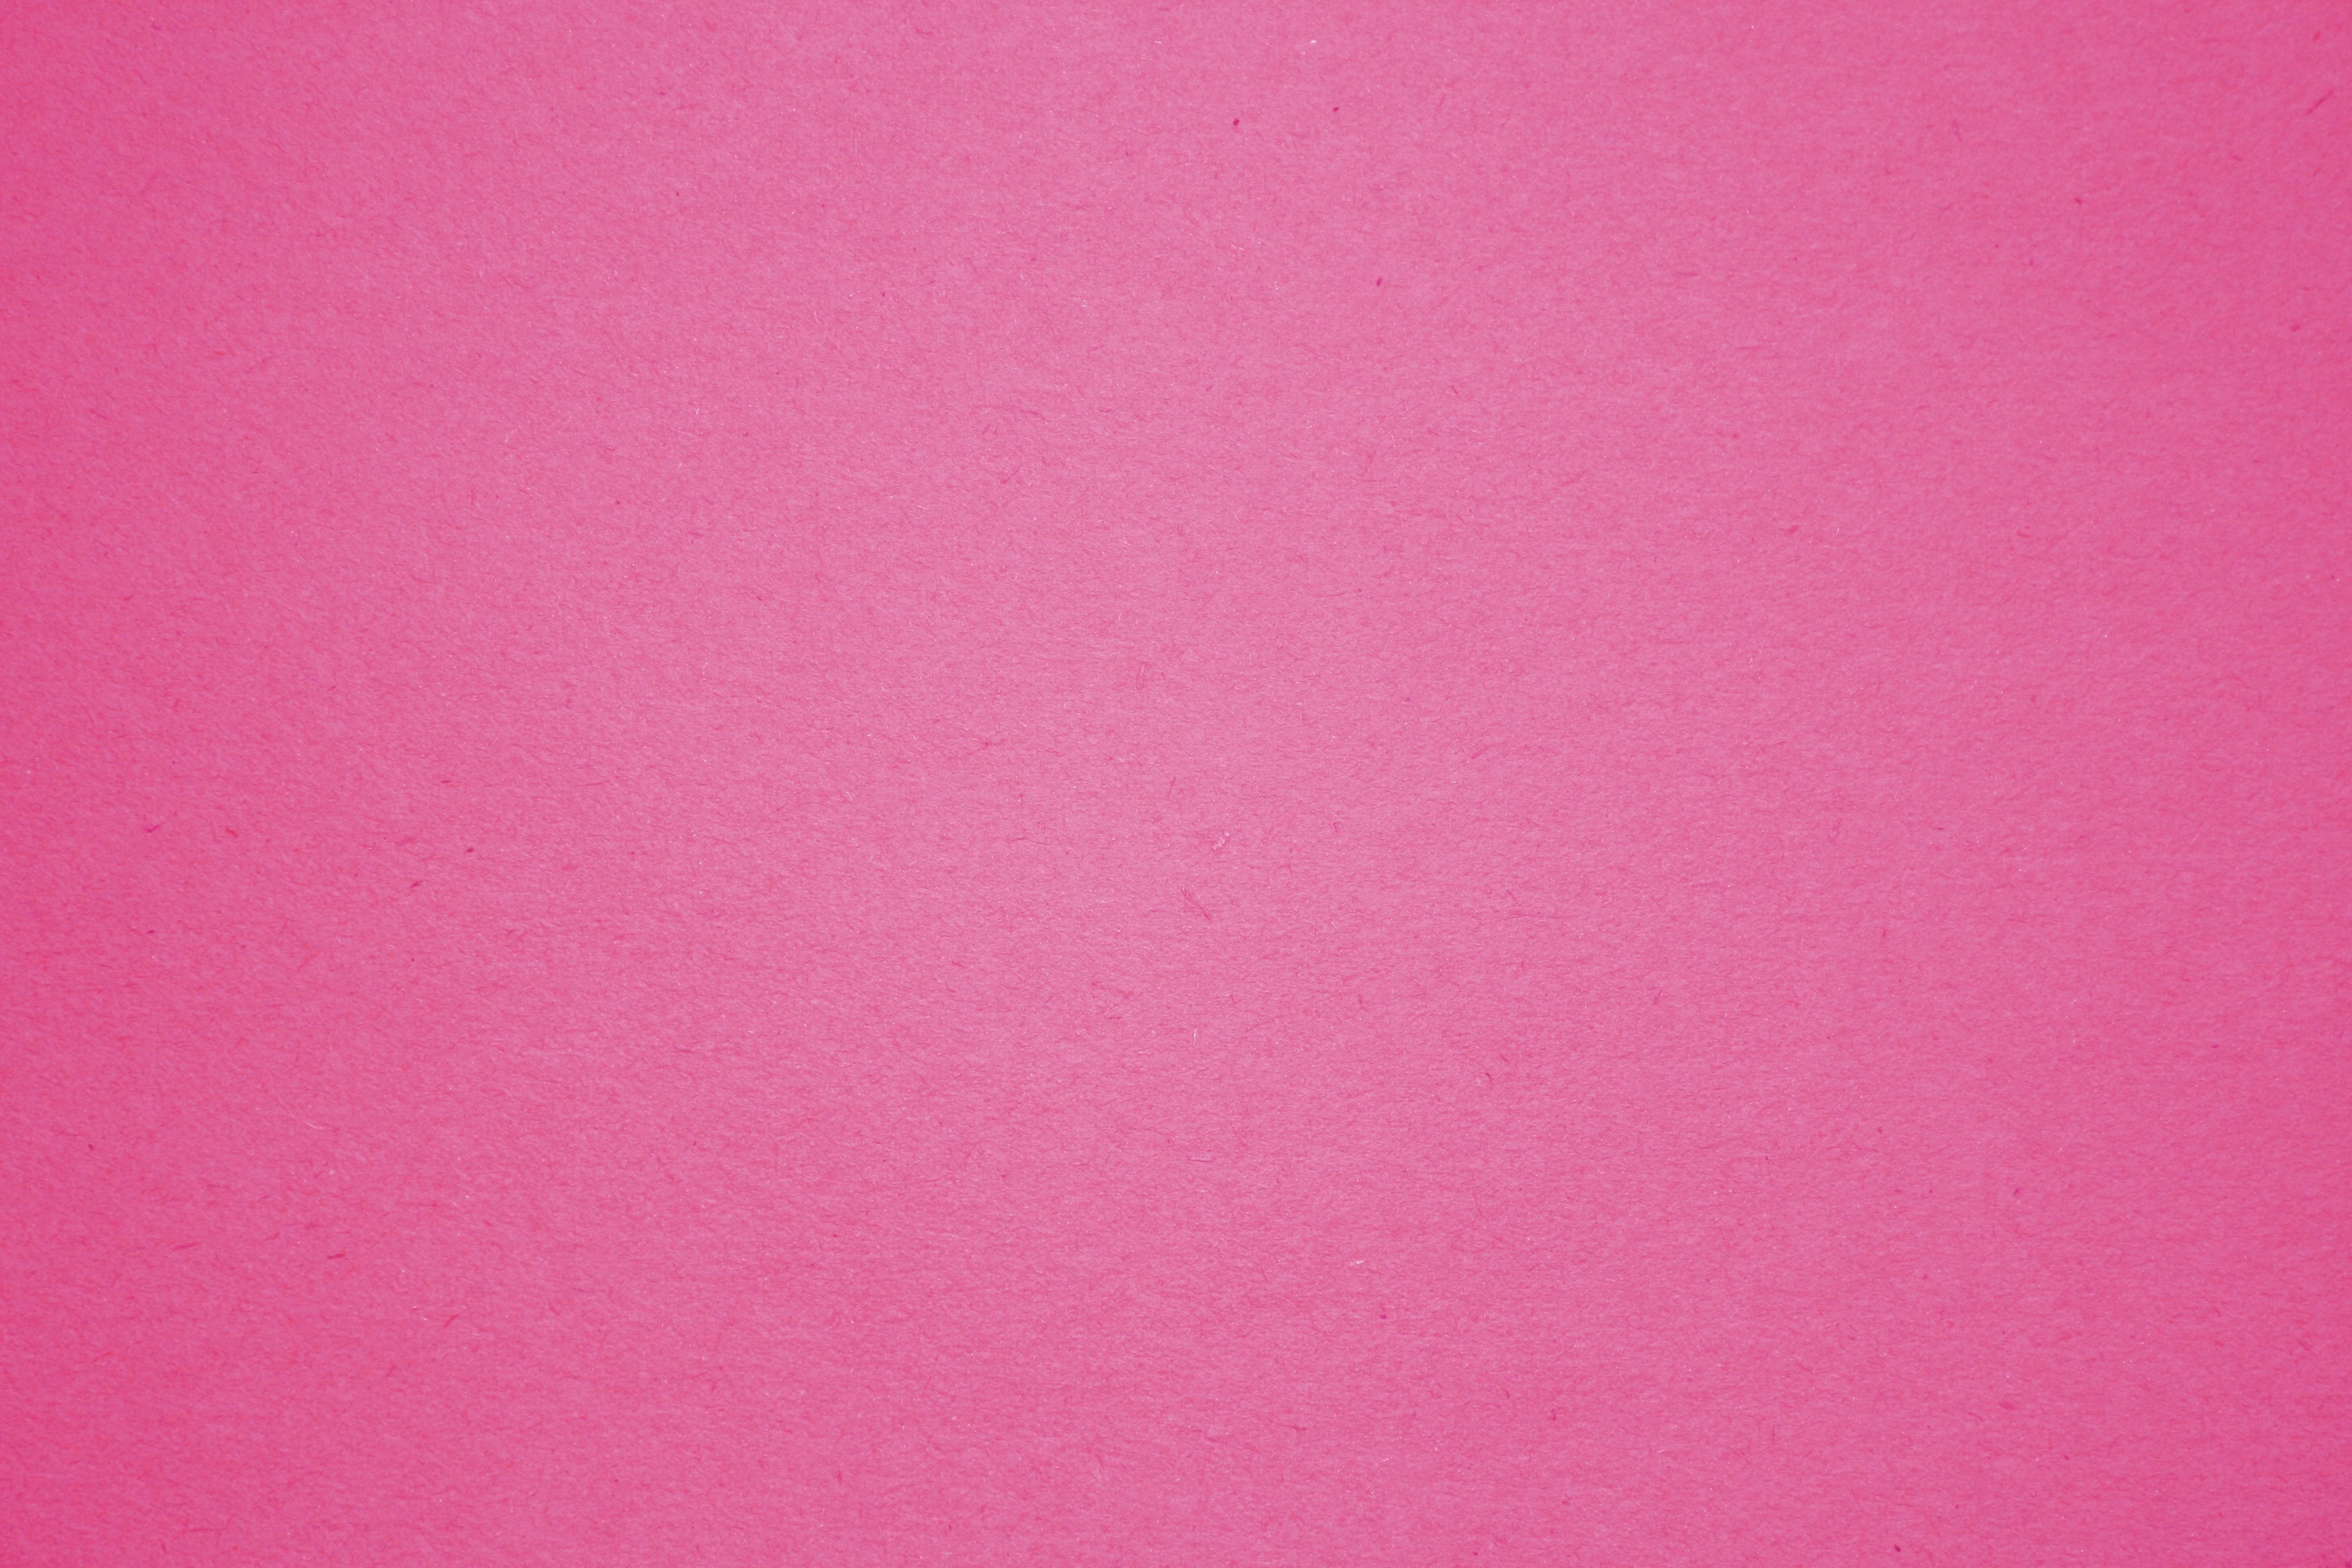 Хорошие однотонные обои. U337 st9 фуксия розовая. Розовый цвет. Розовый фон. Розовый цвет однотонный.